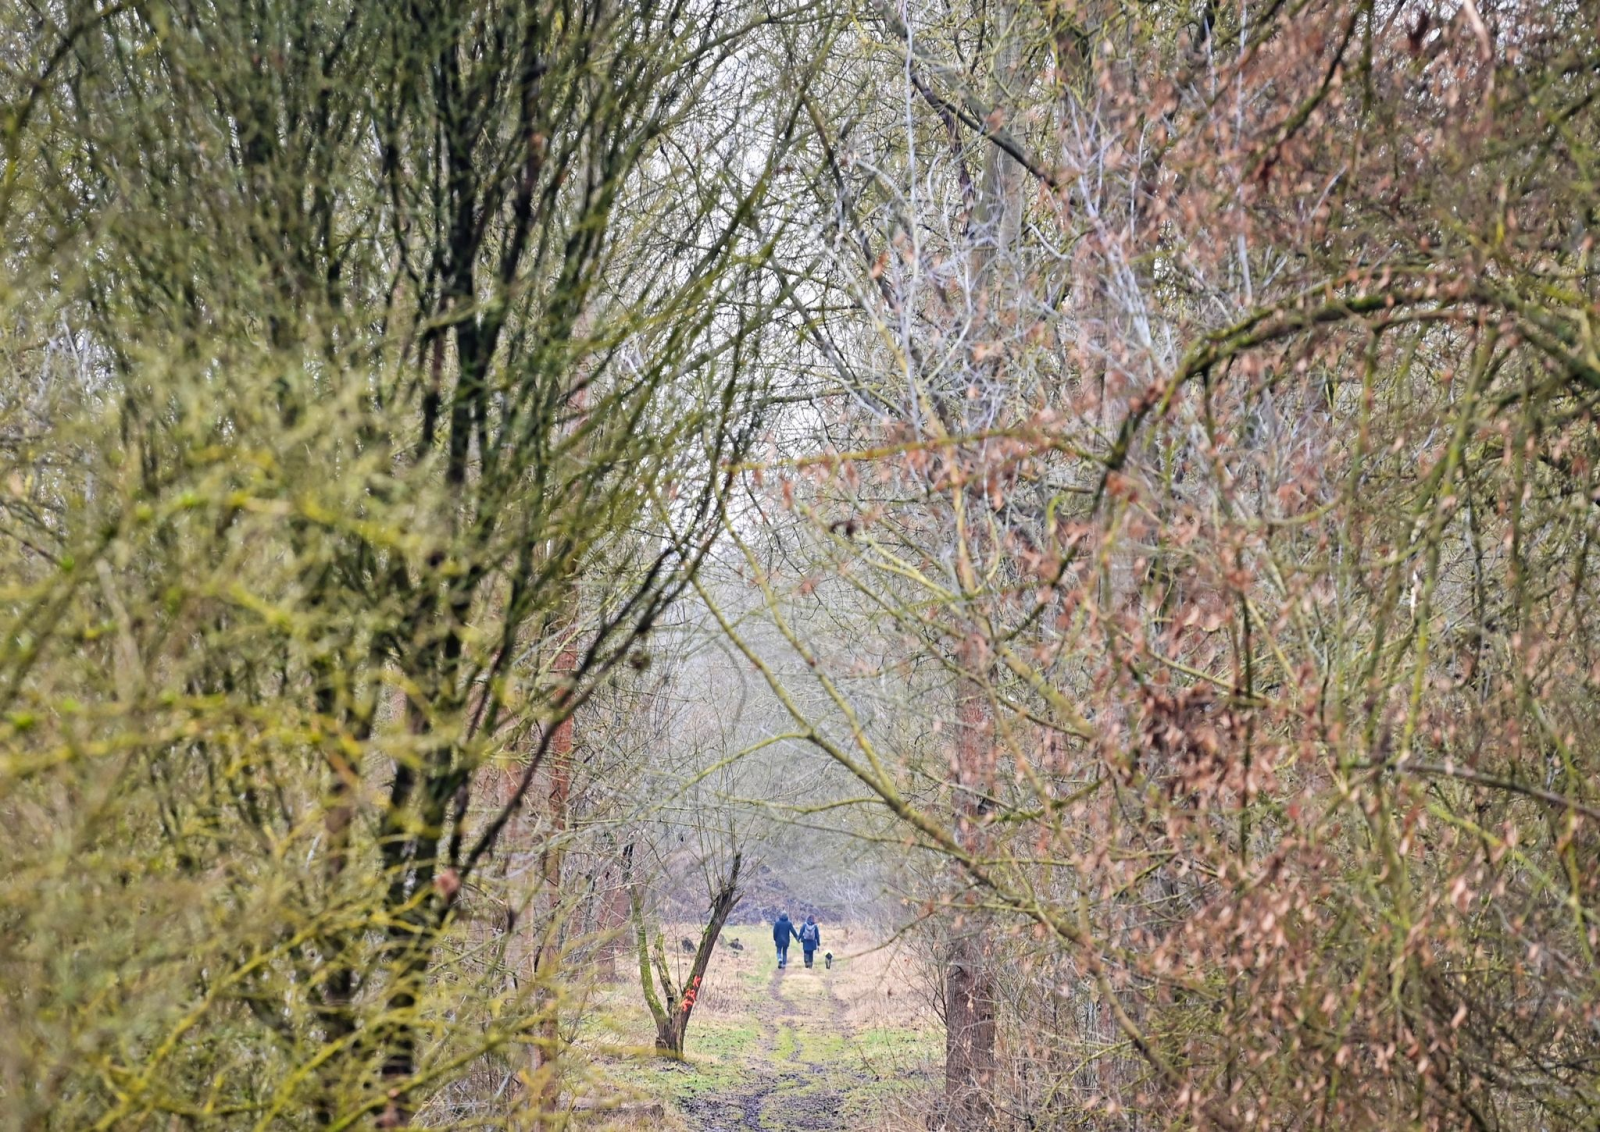 Spaziergänger mit Hund gehen bei trübem Wetter auf einem Weg im Wald spazieren.